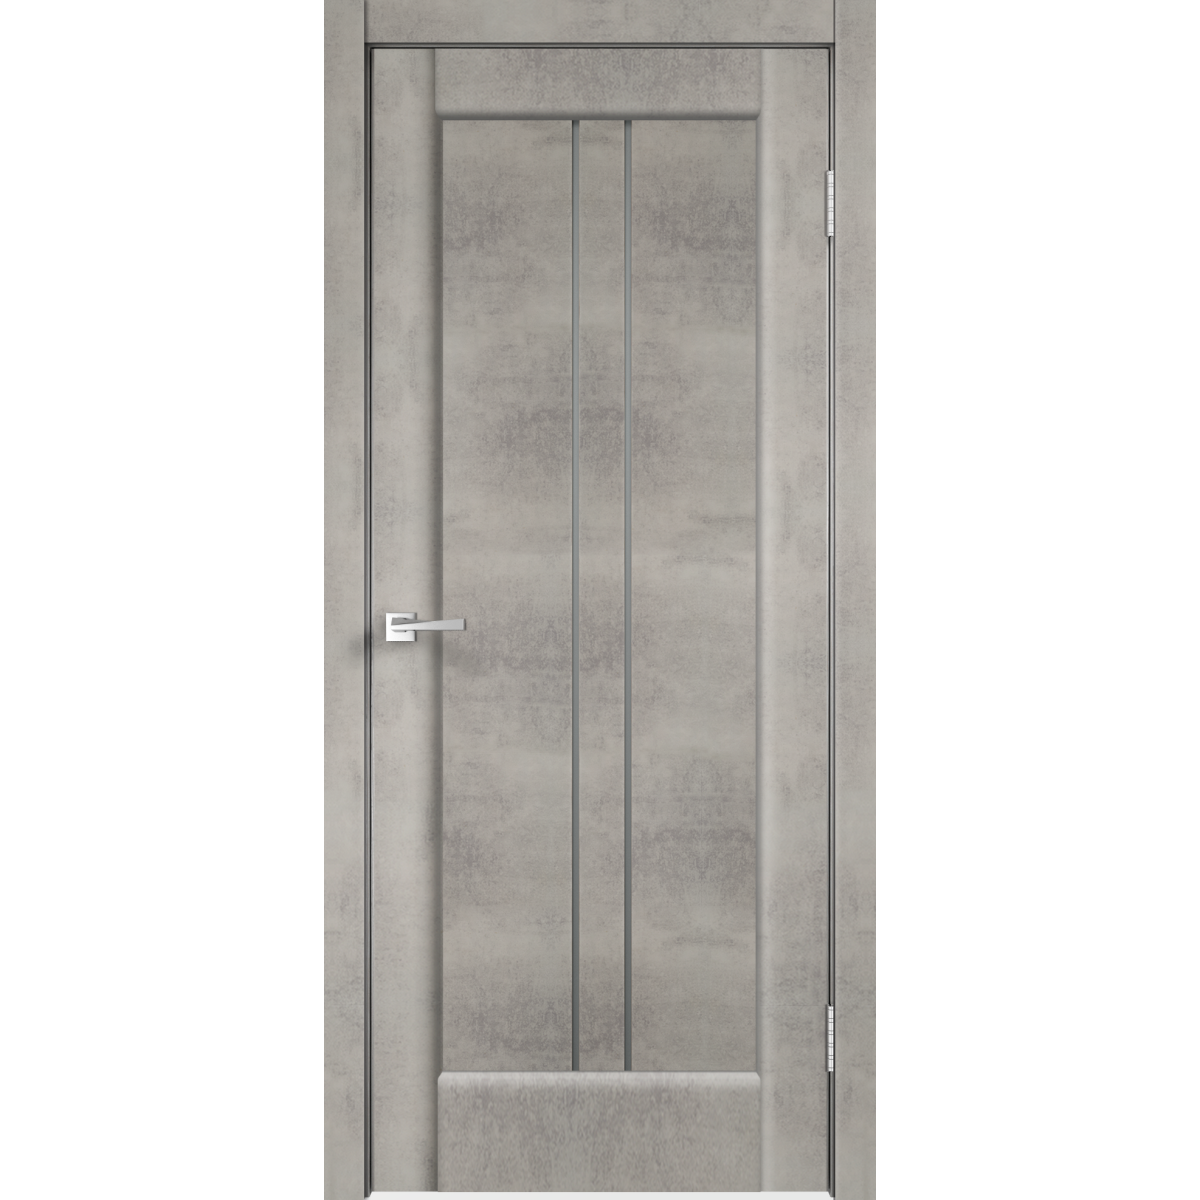 Дверь межкомнатная остеклённая «Сиэтл», 70x200 см, ПВХ, цвет лофт светлый, с фурнитурой